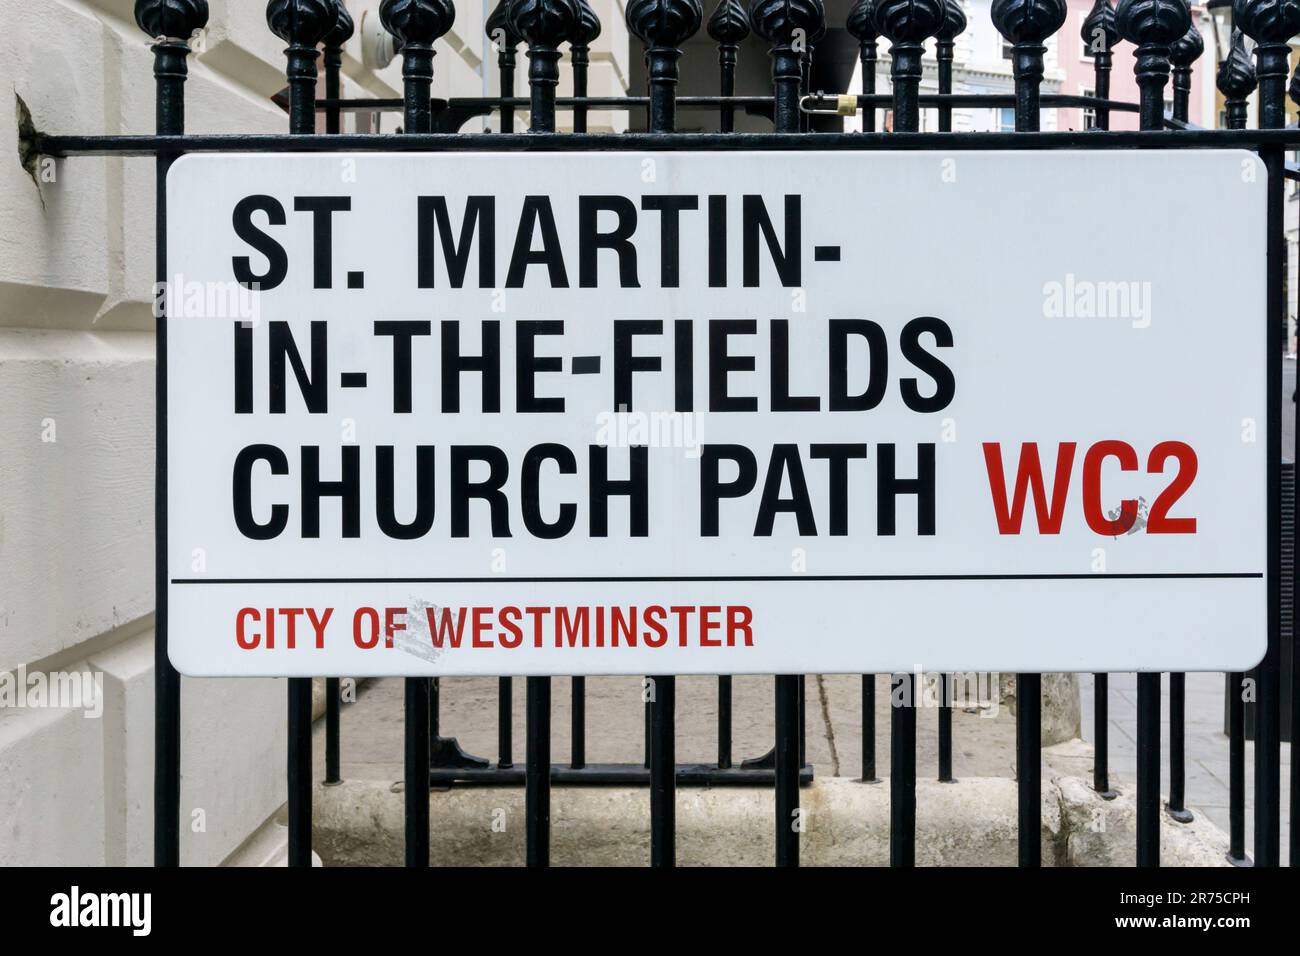 Ein Straßenschild für den St. Martin-in-the-Fields Church Path in Westminster, London WC2. Vermutlich Londons längster Straßenname. Stockfoto